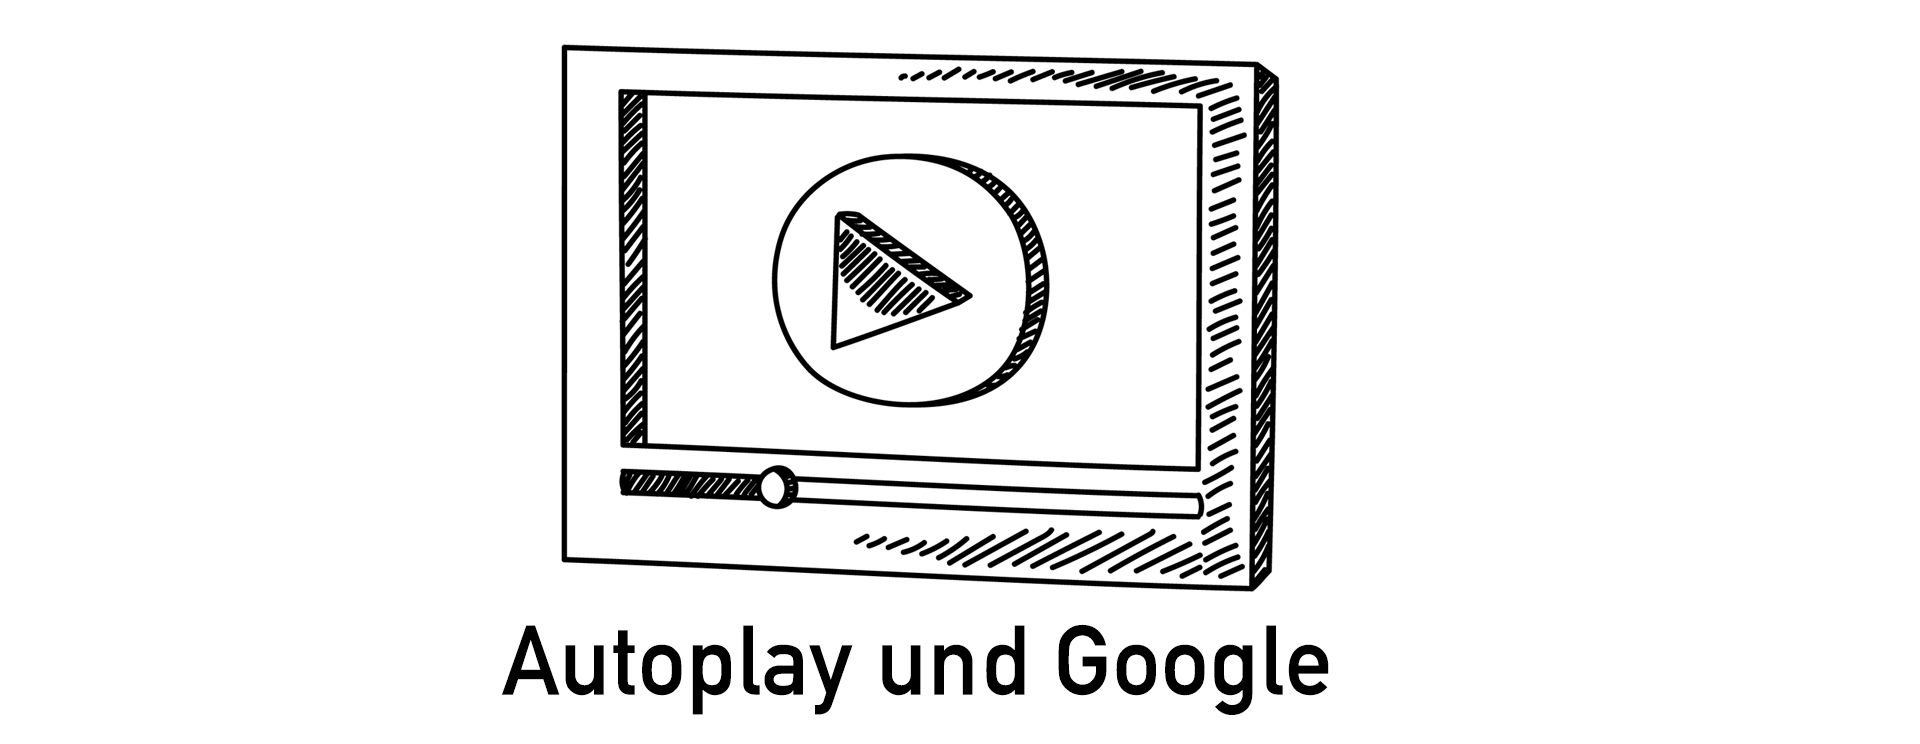 Autoplay und Google.